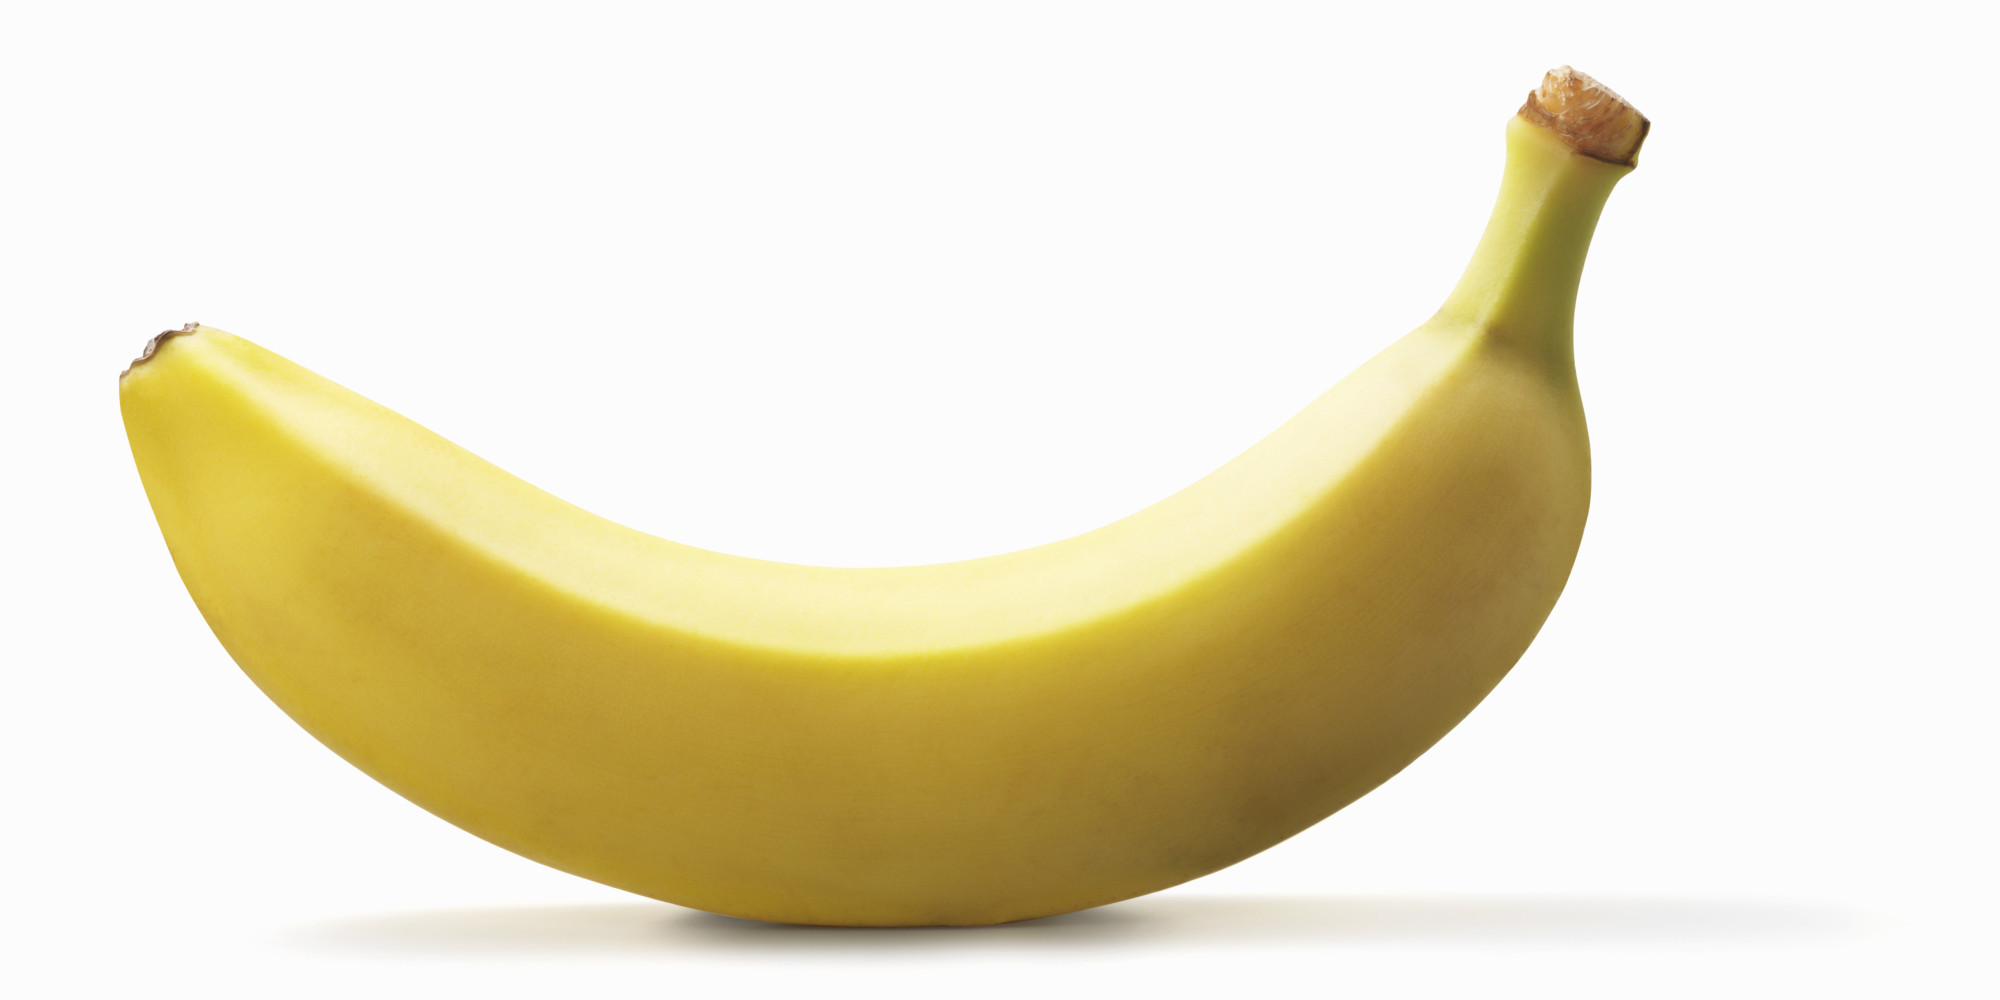 Bananahd